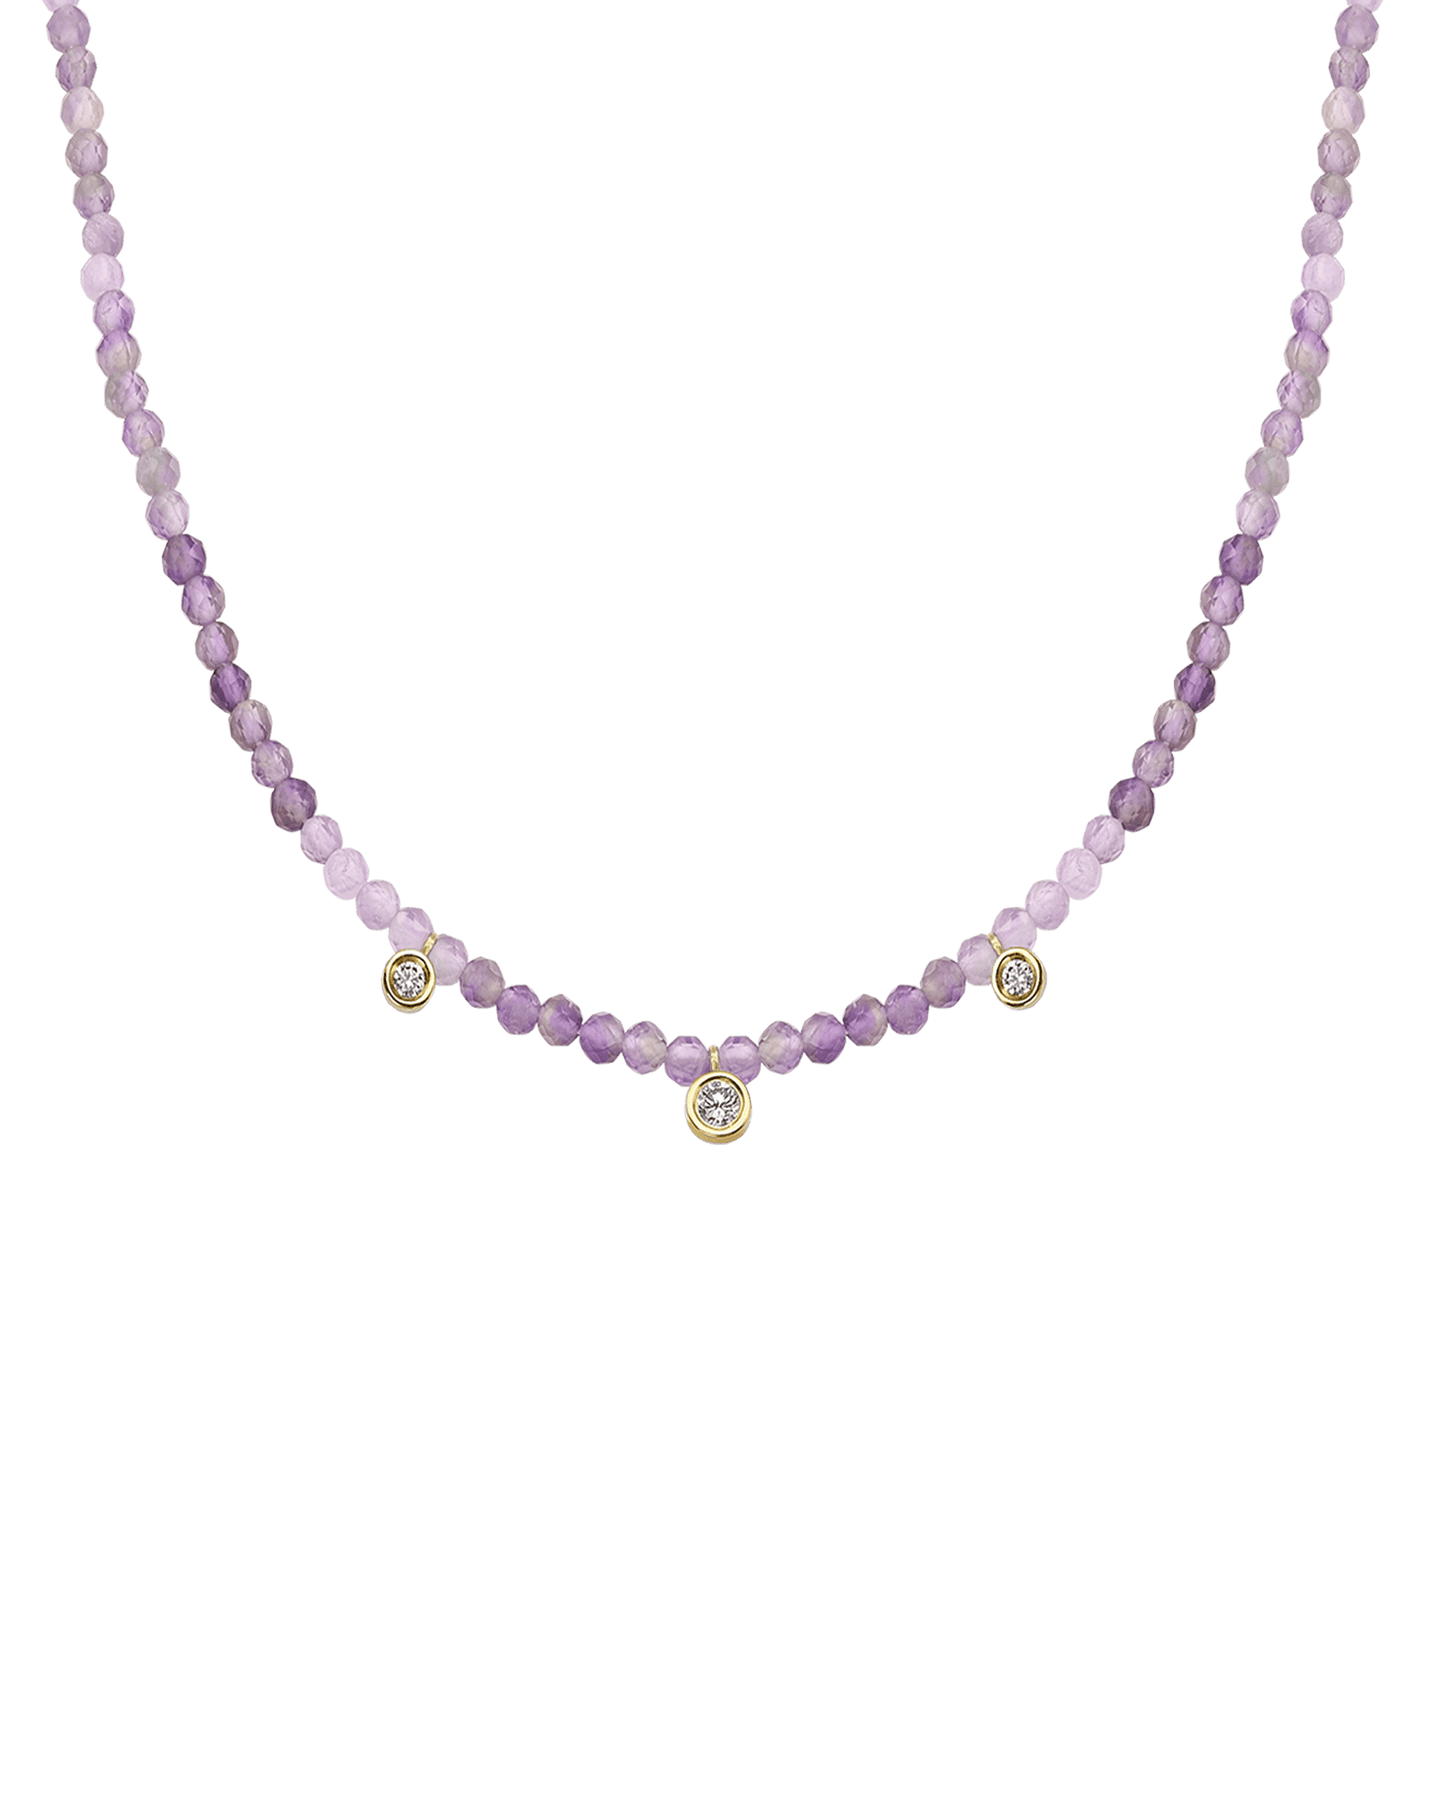 Colliers 3 Diamants & Pierres Précieuses - Or Jaune 14 carats Necklaces magal-dev Natural Purple Amethyst 35cm - Ras de Cou 